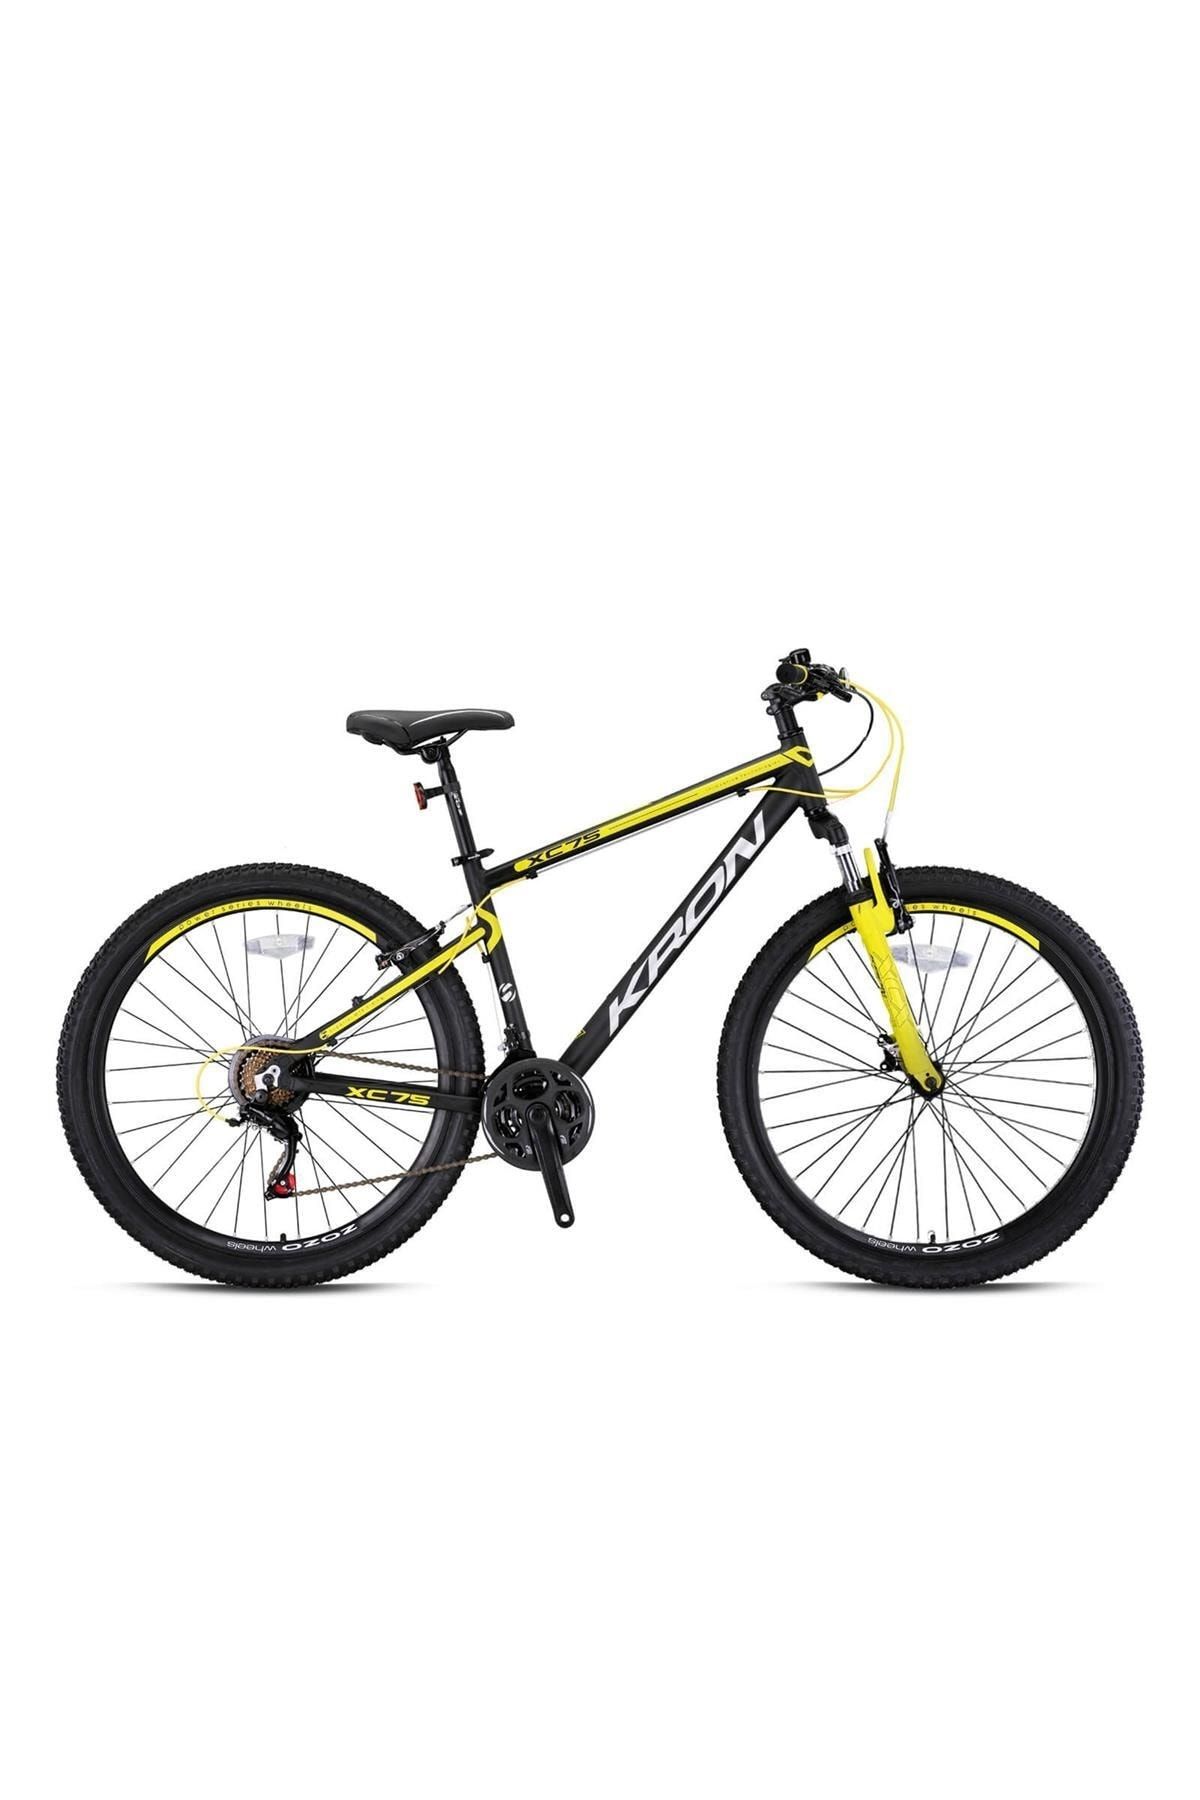 Kron Xc75 26 Jant V 17k Erkek Dağ Bisikleti M.siyah-sarı